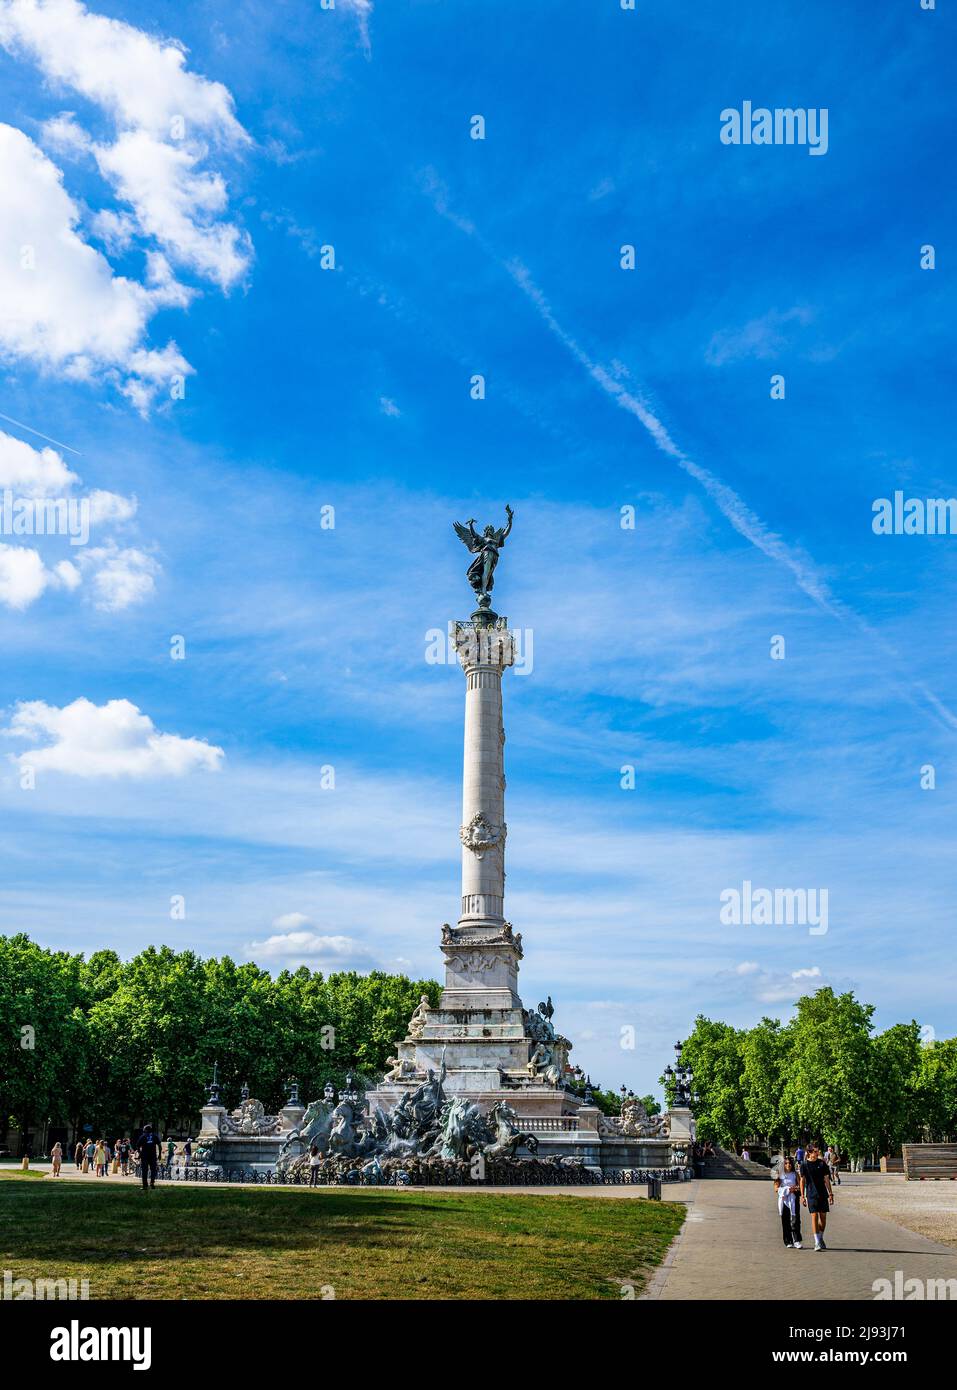 Monumento a los Girondins, Place des Quinconces, Burdeos, Francia - emblemático de la Revolución Francesa en Burdeos con el famoso monumento y fuentes Foto de stock